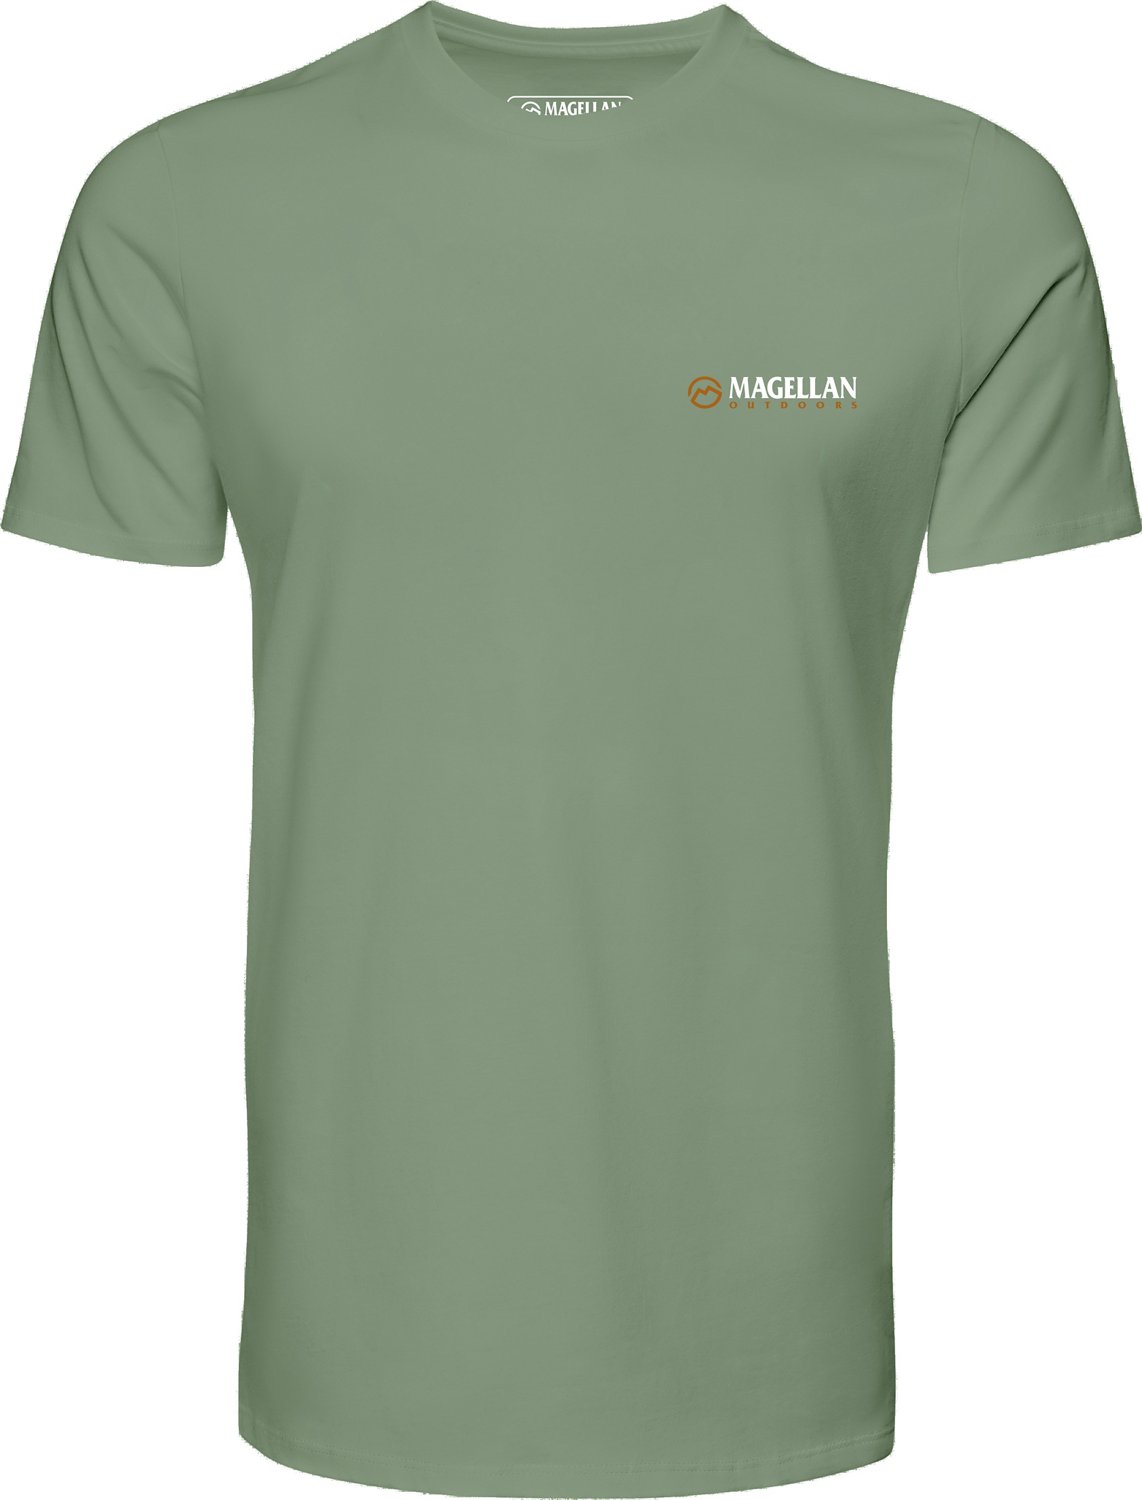 Magellan Outdoors Men's FIN APPROACH Short Sleeve T-shirt